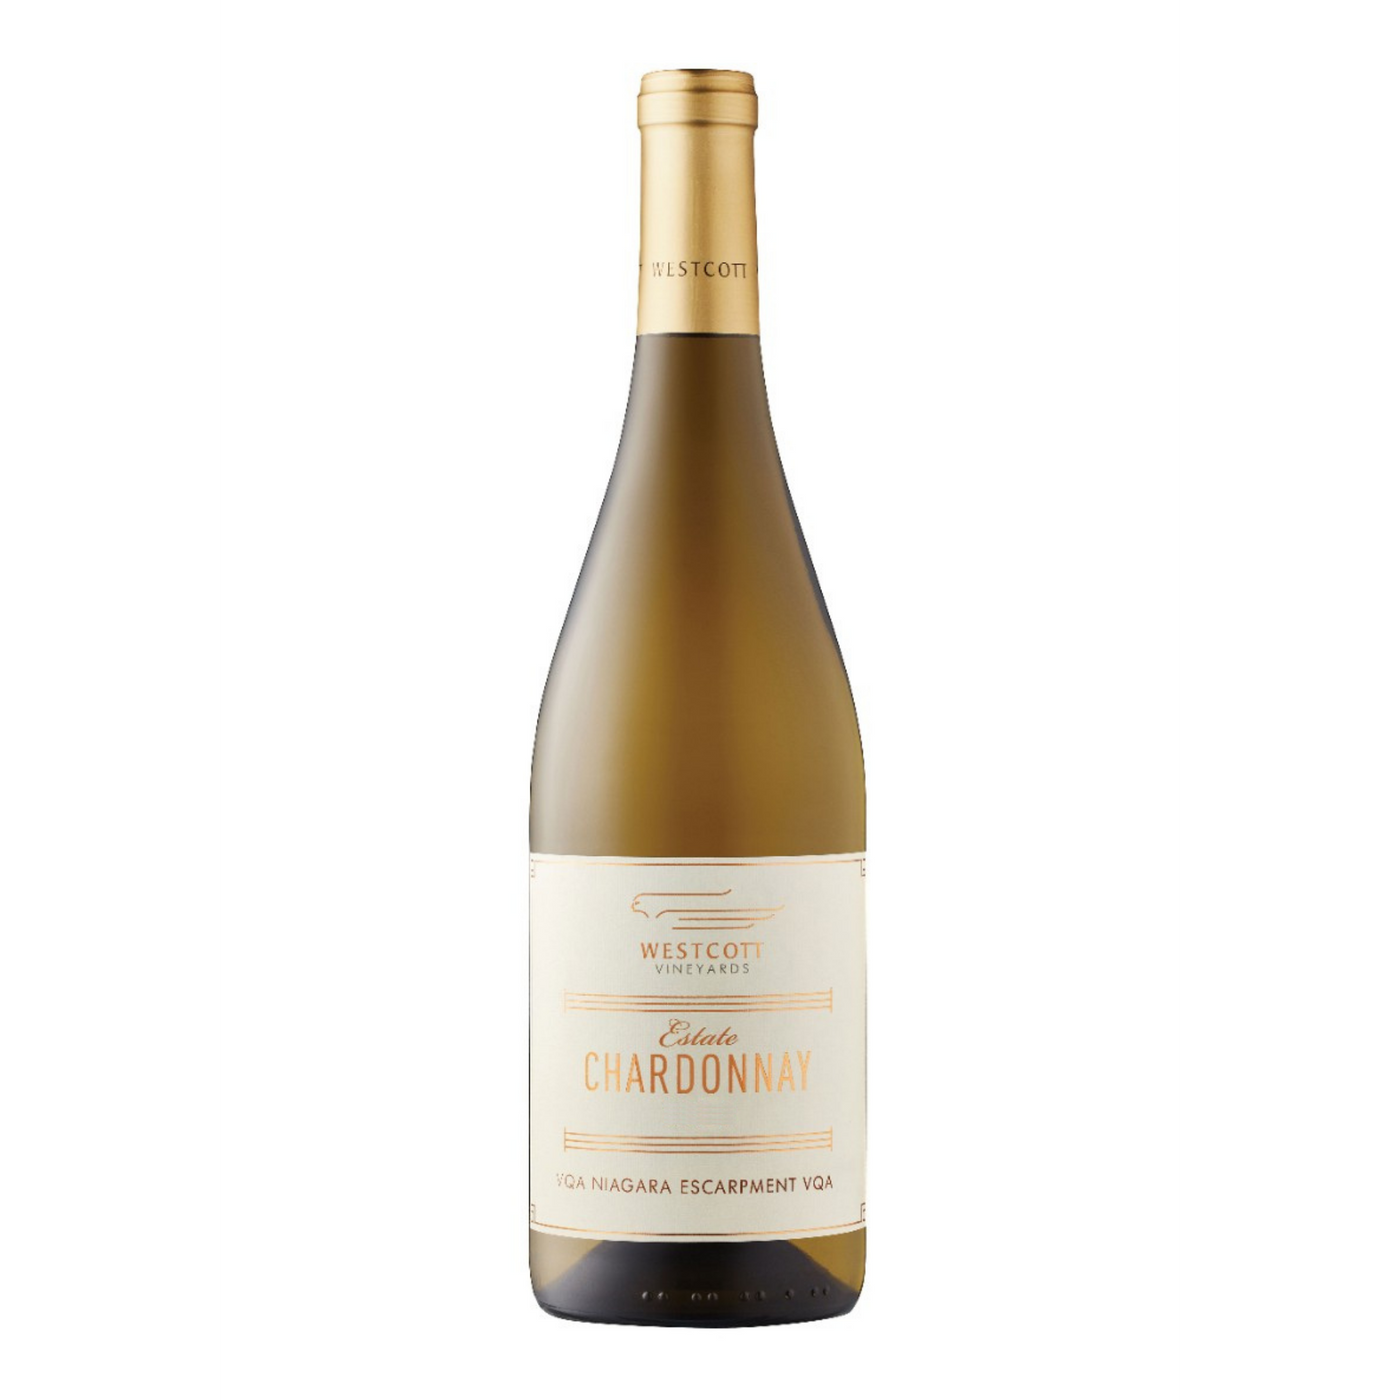 Westcott Vineyards Chardonnay 2018